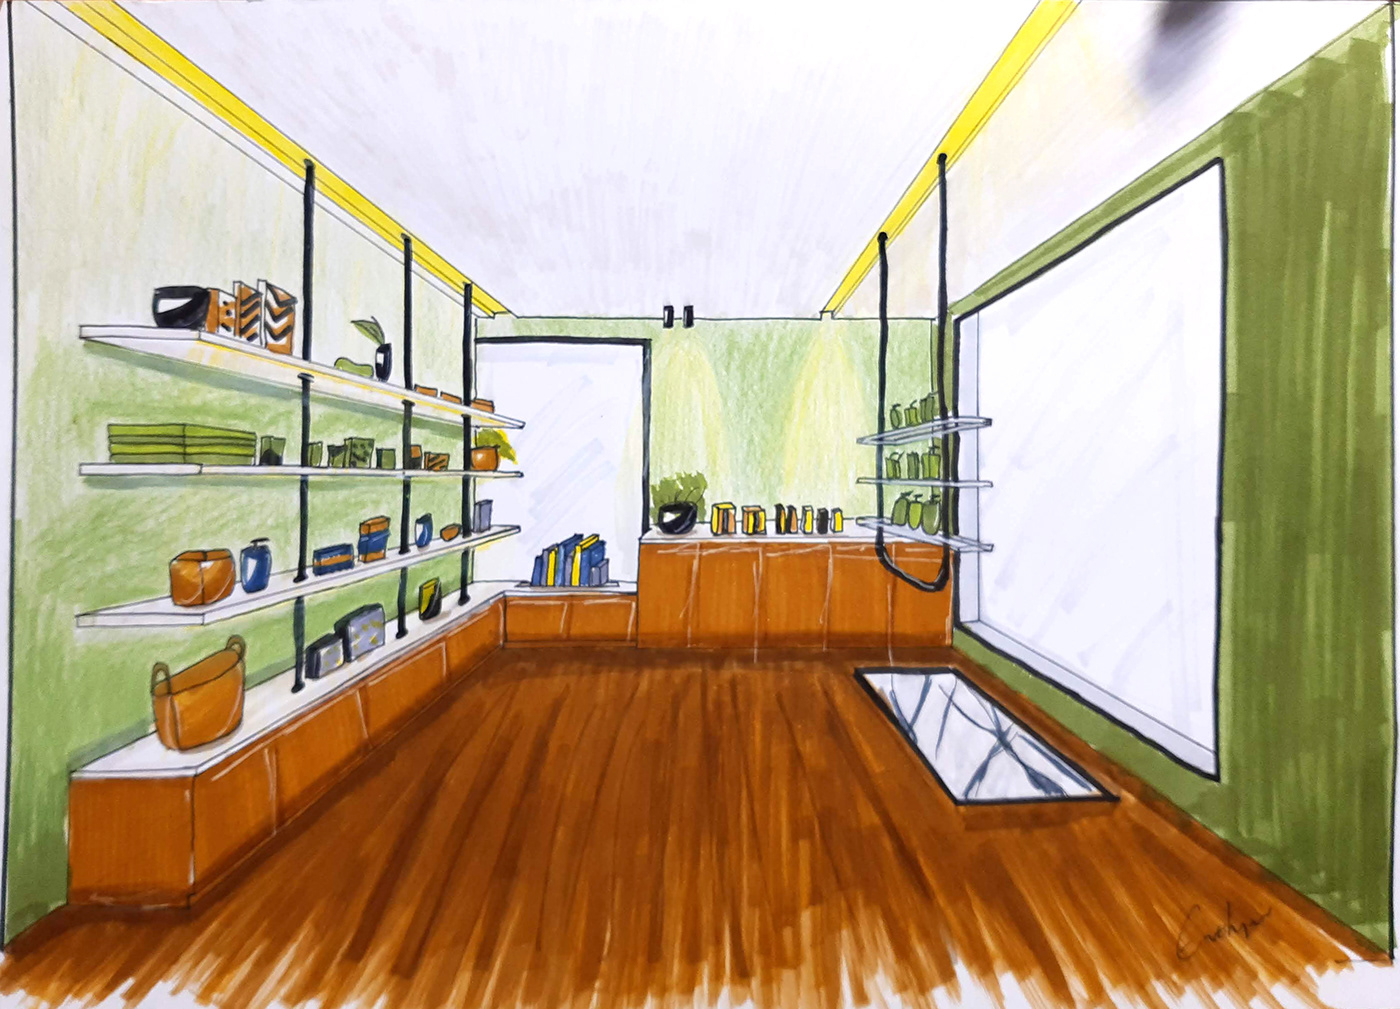 croqui design de interiores interior design  interiores comerciais loja em 3d Modelagem projeto 3d